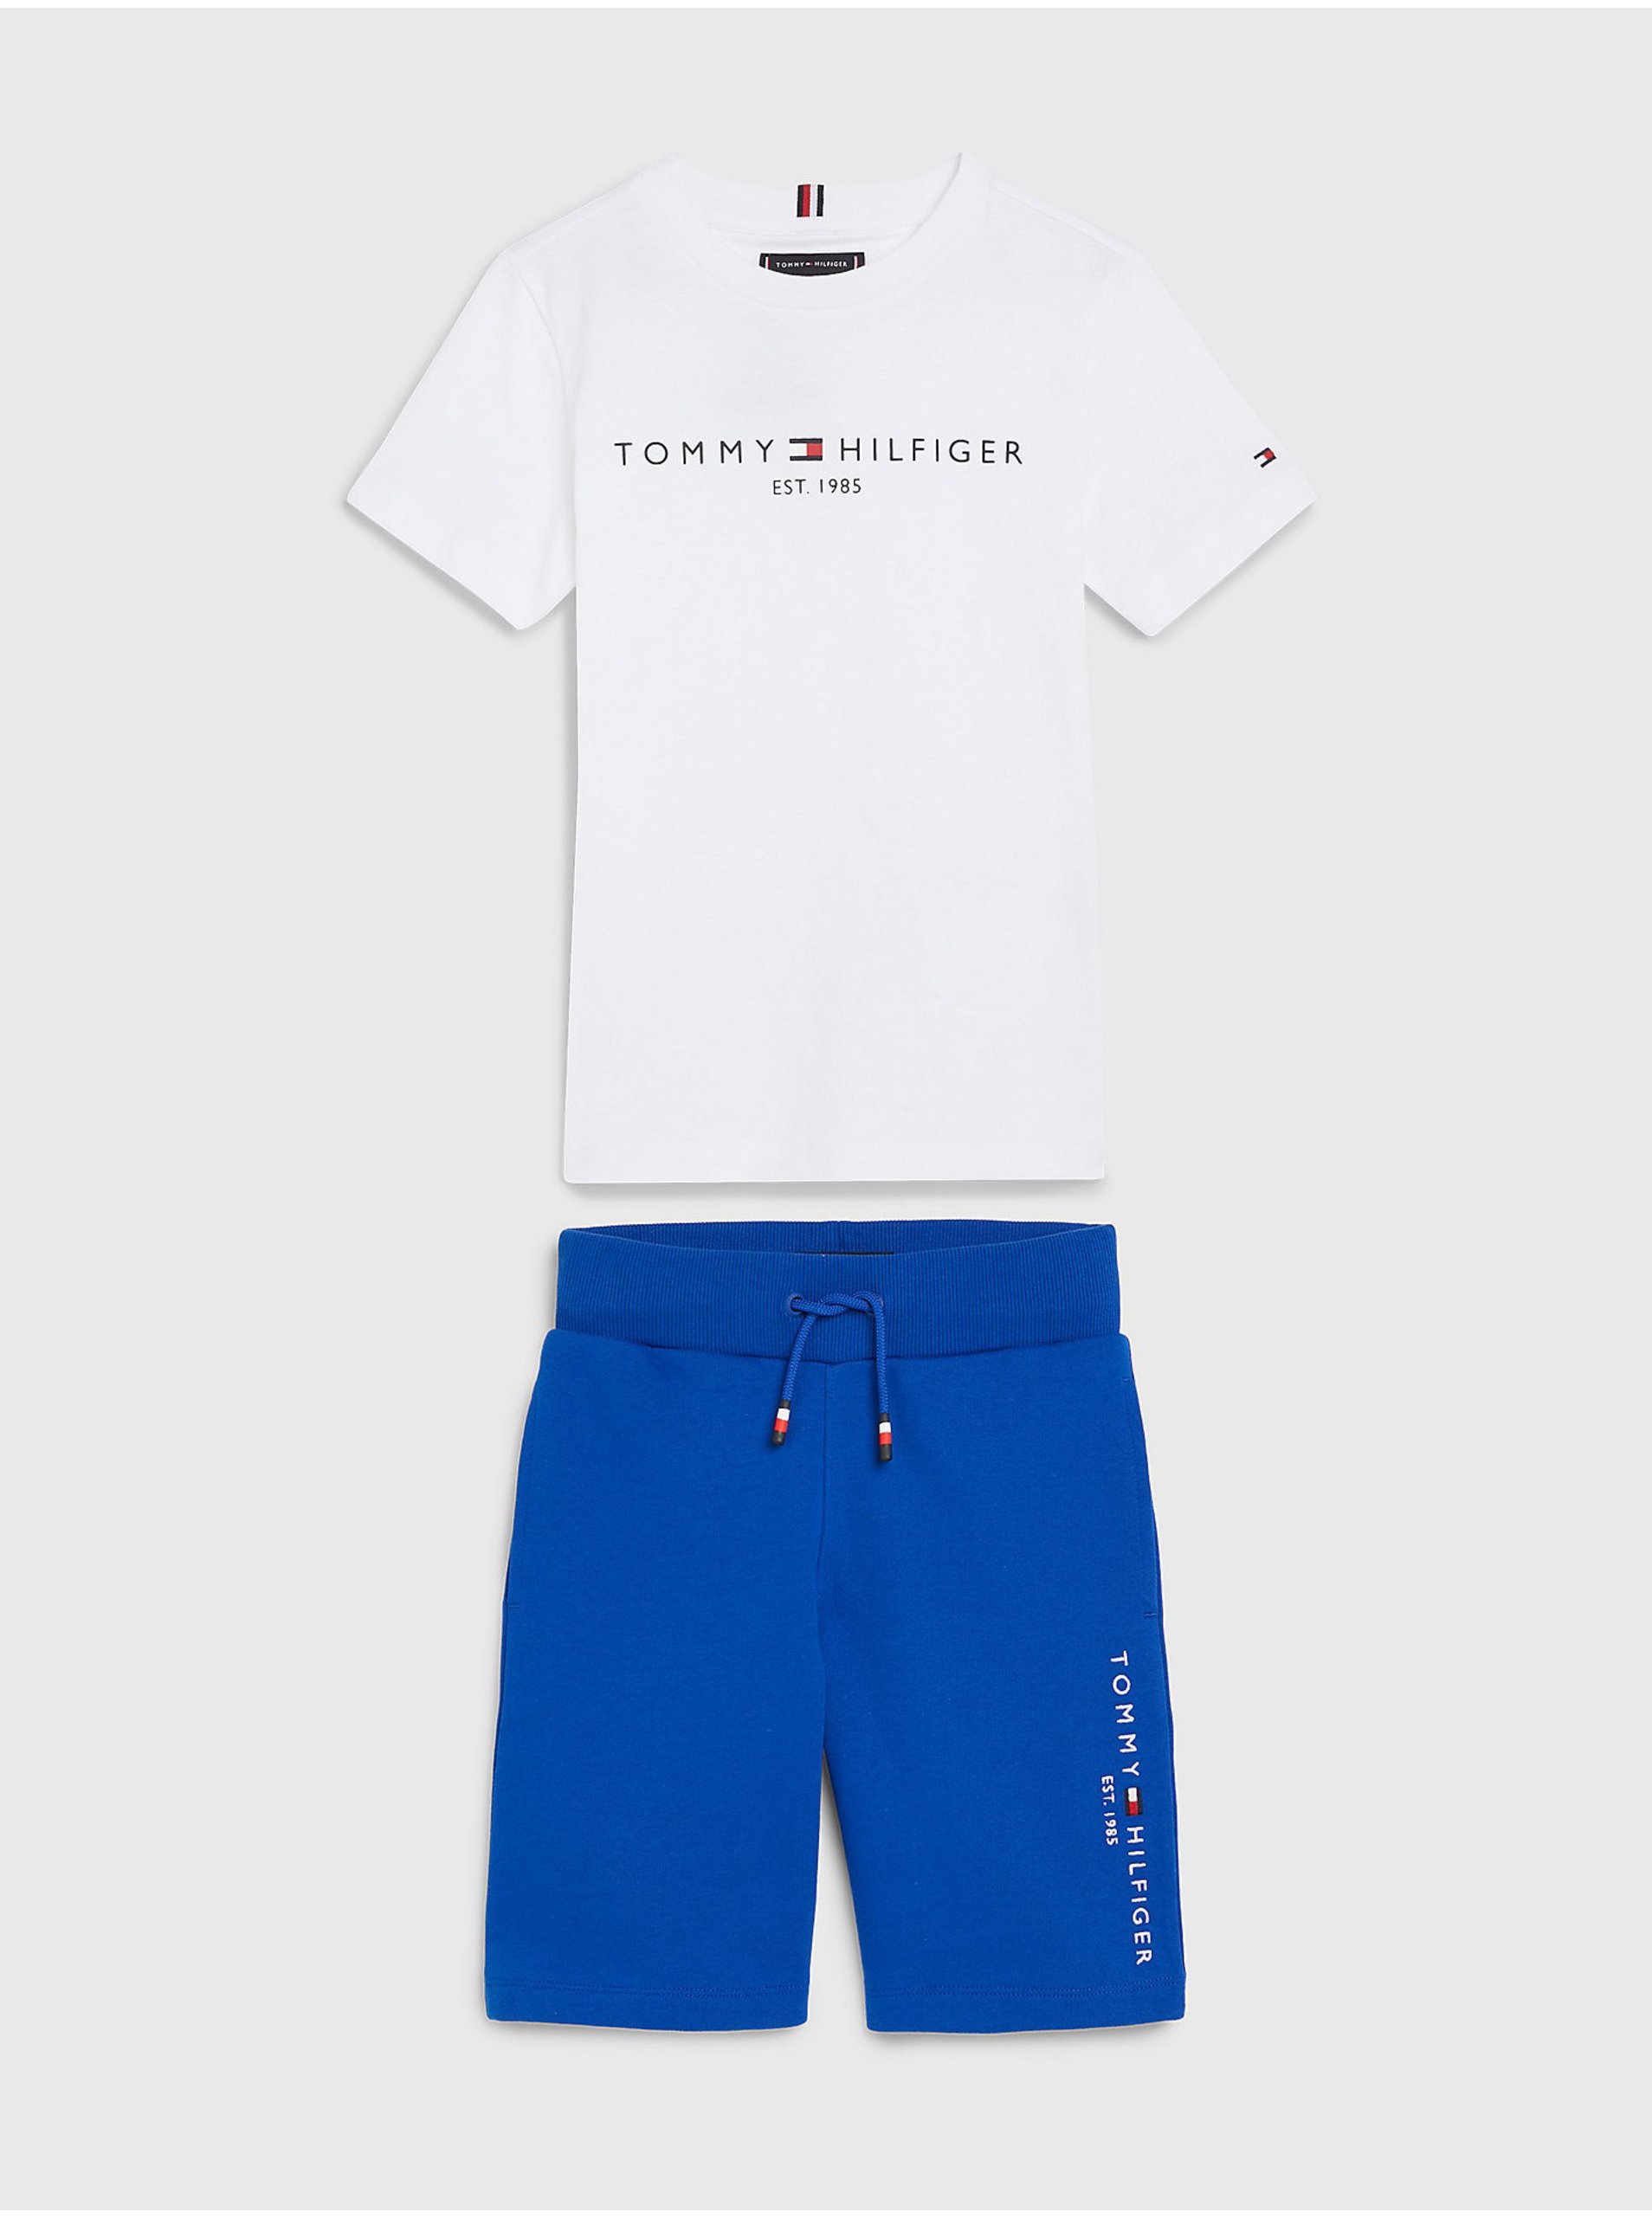 Lacno Súprava chlapčenského trička a kraťasov v bielej a modrej farbe Tommy Hilfiger